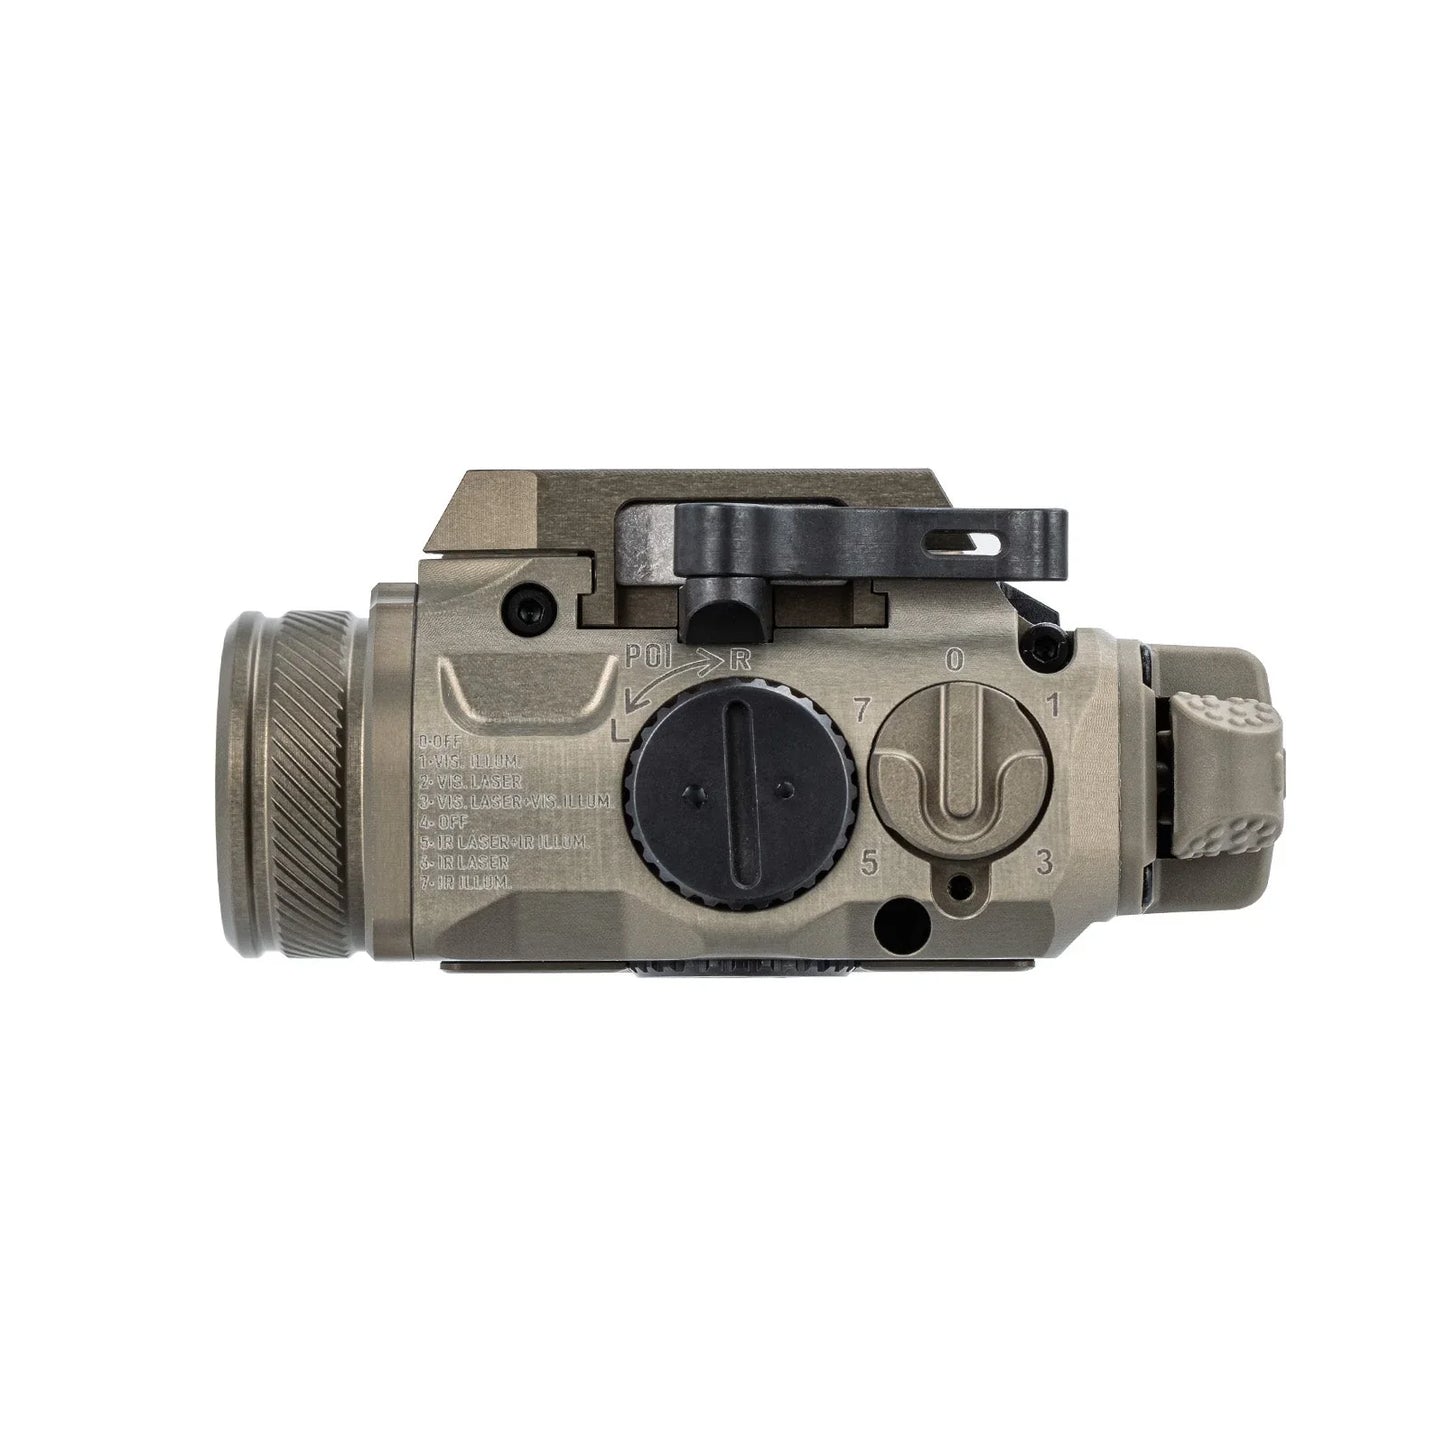 Rovyvon GL4 Pro FP 4-in-1 Laser and Illuminator